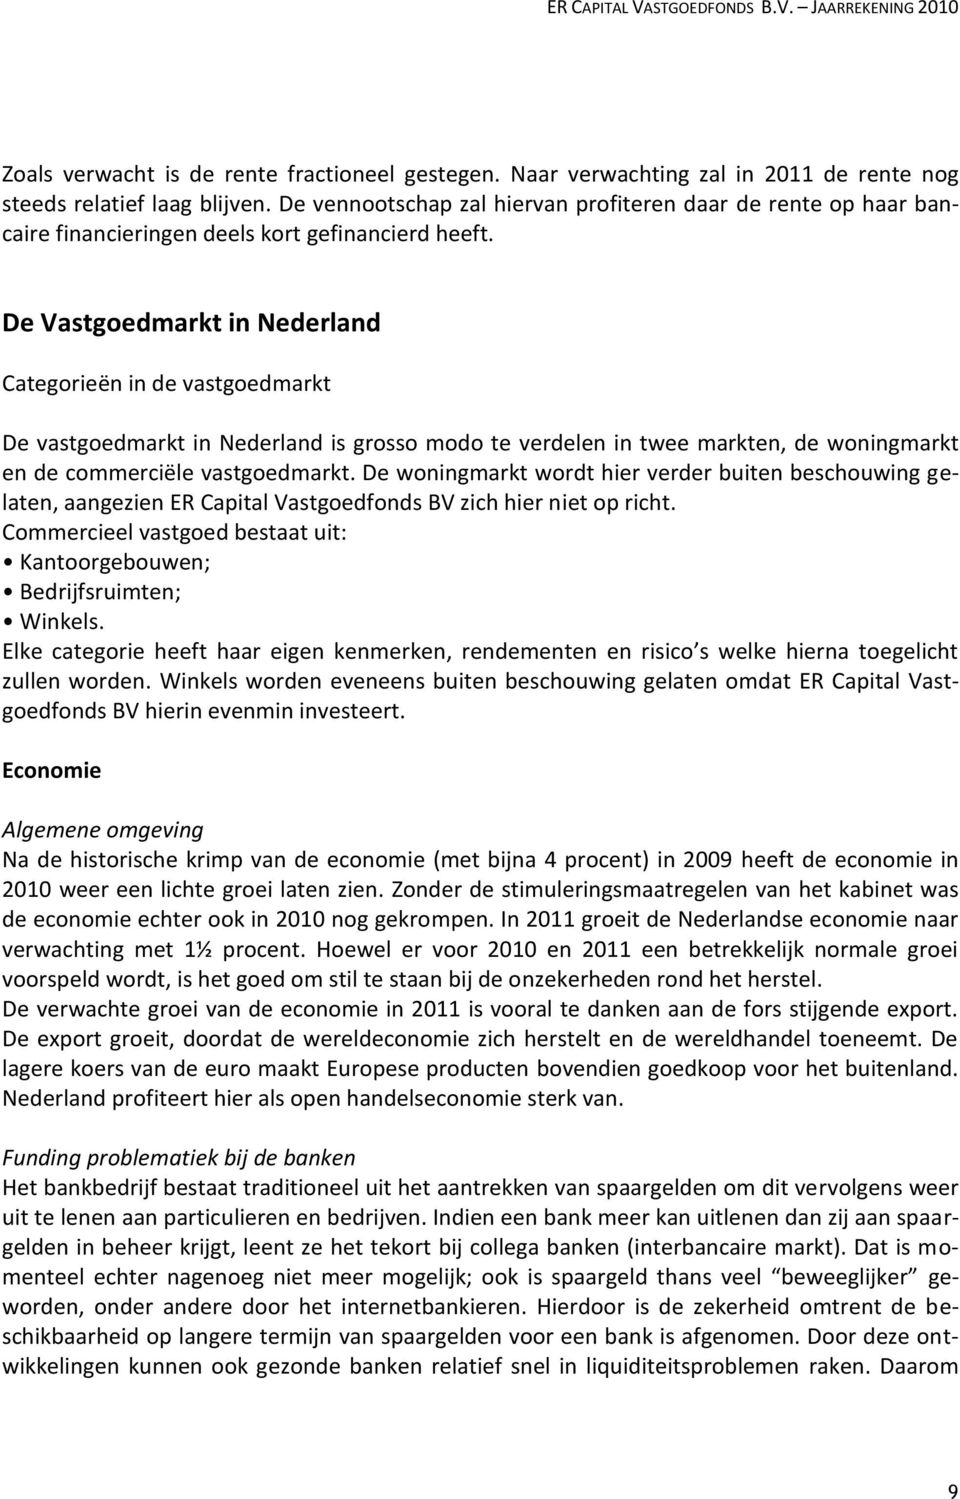 De Vastgoedmarkt in Nederland Categorieën in de vastgoedmarkt De vastgoedmarkt in Nederland is grosso modo te verdelen in twee markten, de woningmarkt en de commerciële vastgoedmarkt.